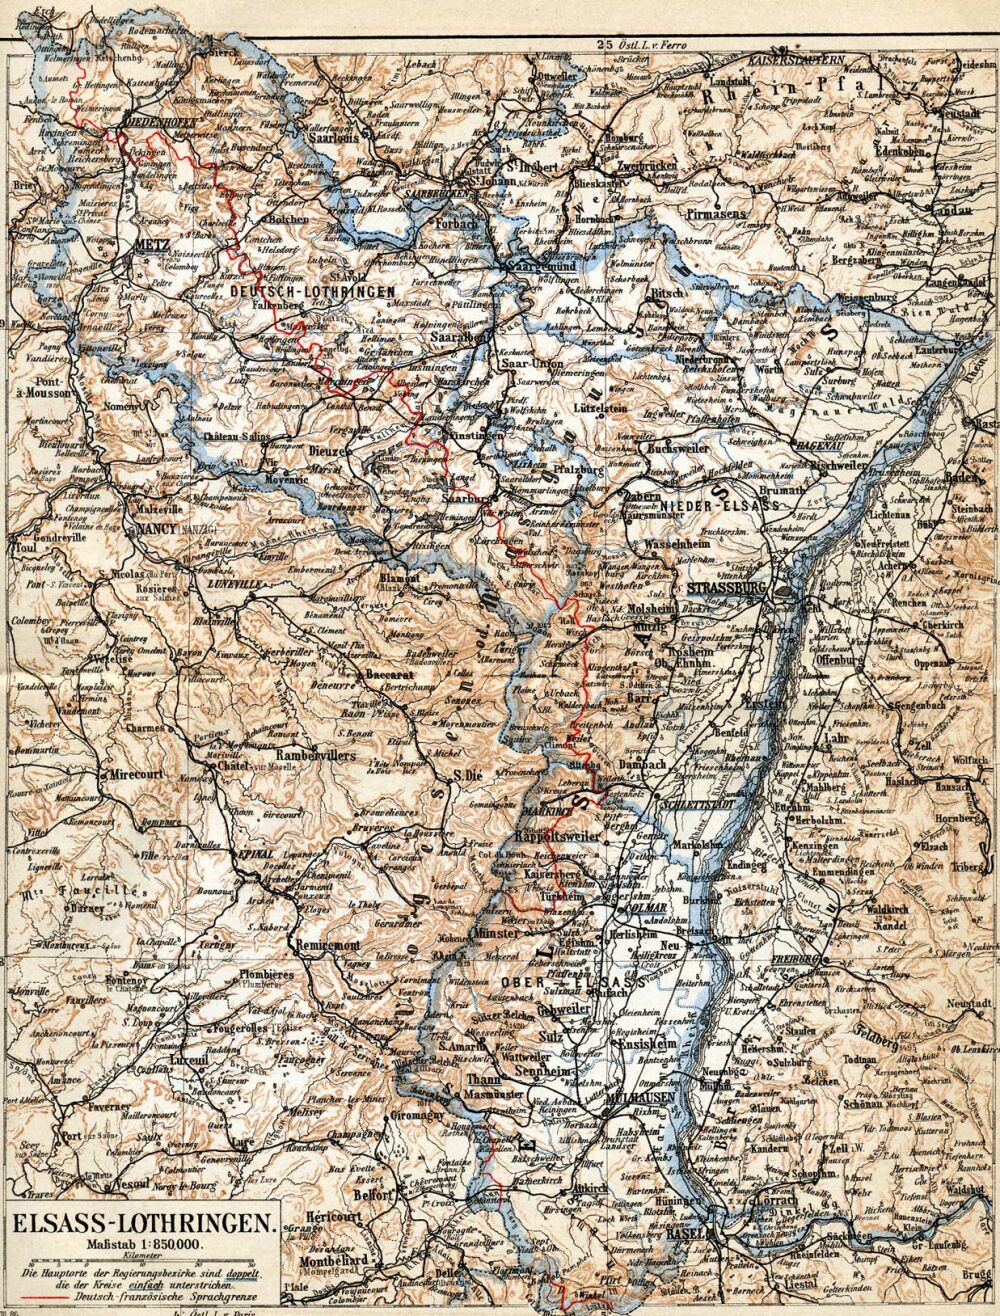 Karte des deutschen Verwaltungsgebiets Elsass-Lothringen von 1884